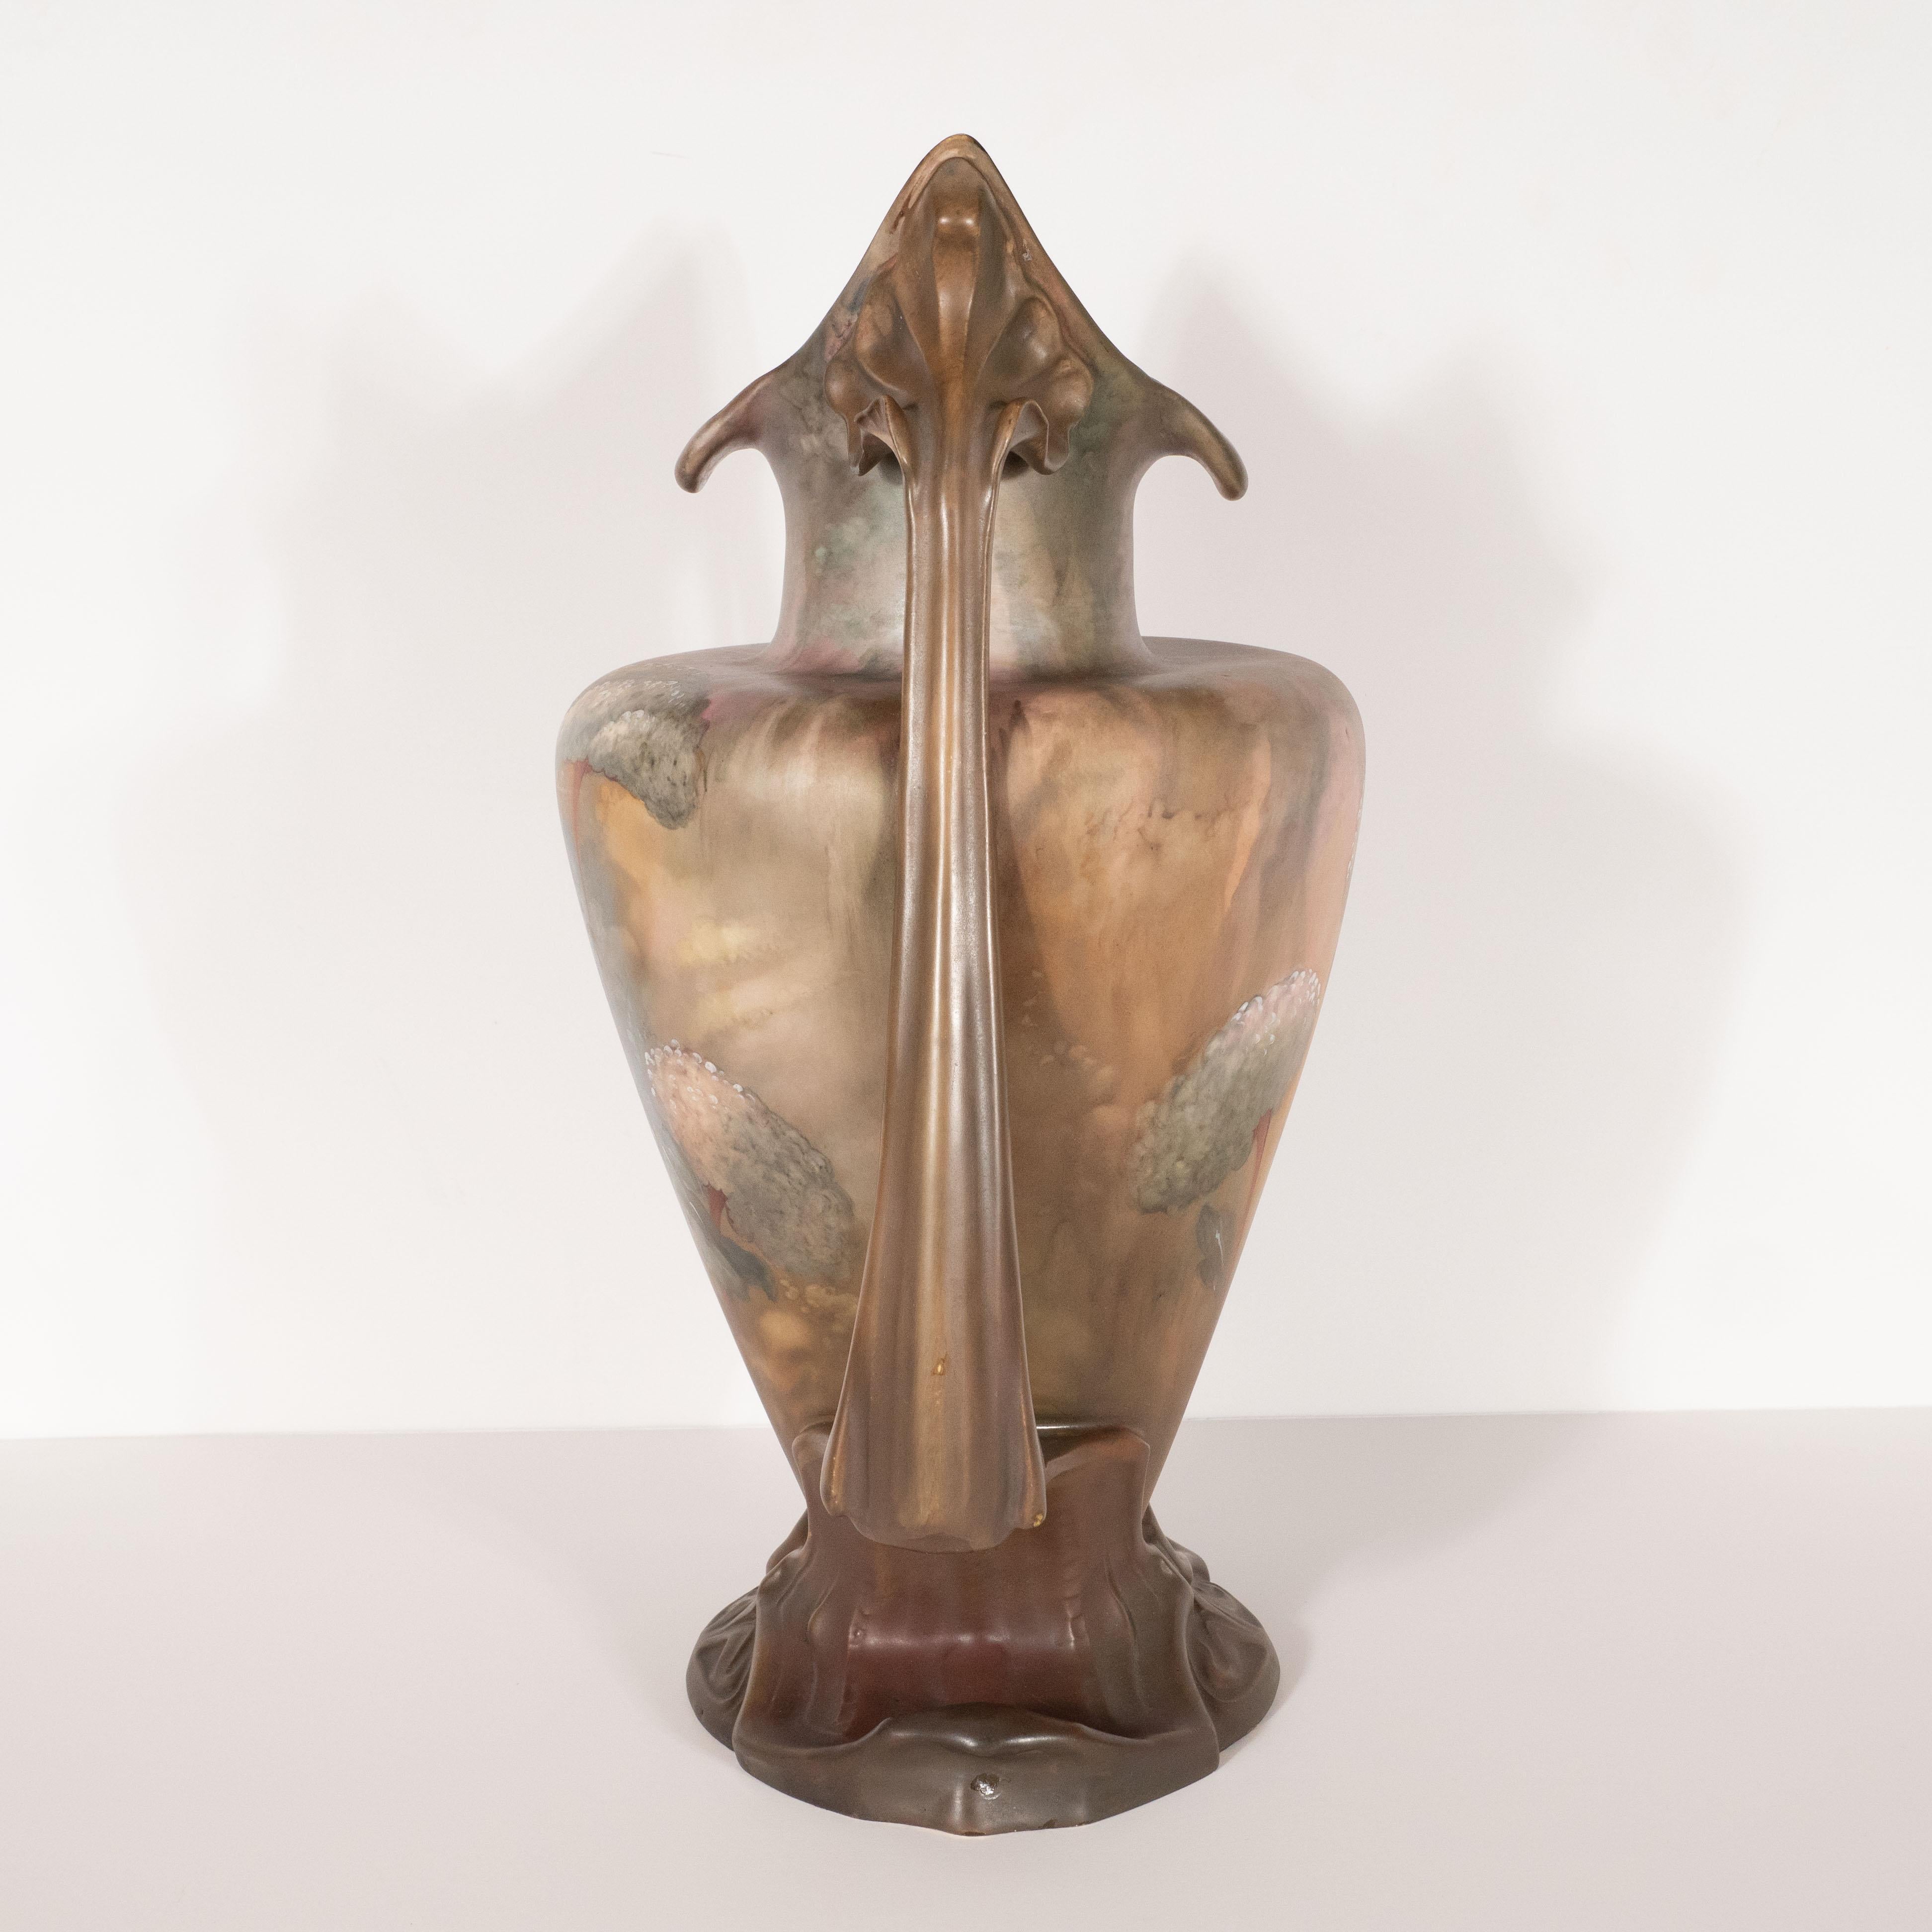 Pair of Art Nouveau Hand Painted Sculptural Ceramic Vases by Royal Bonn 1